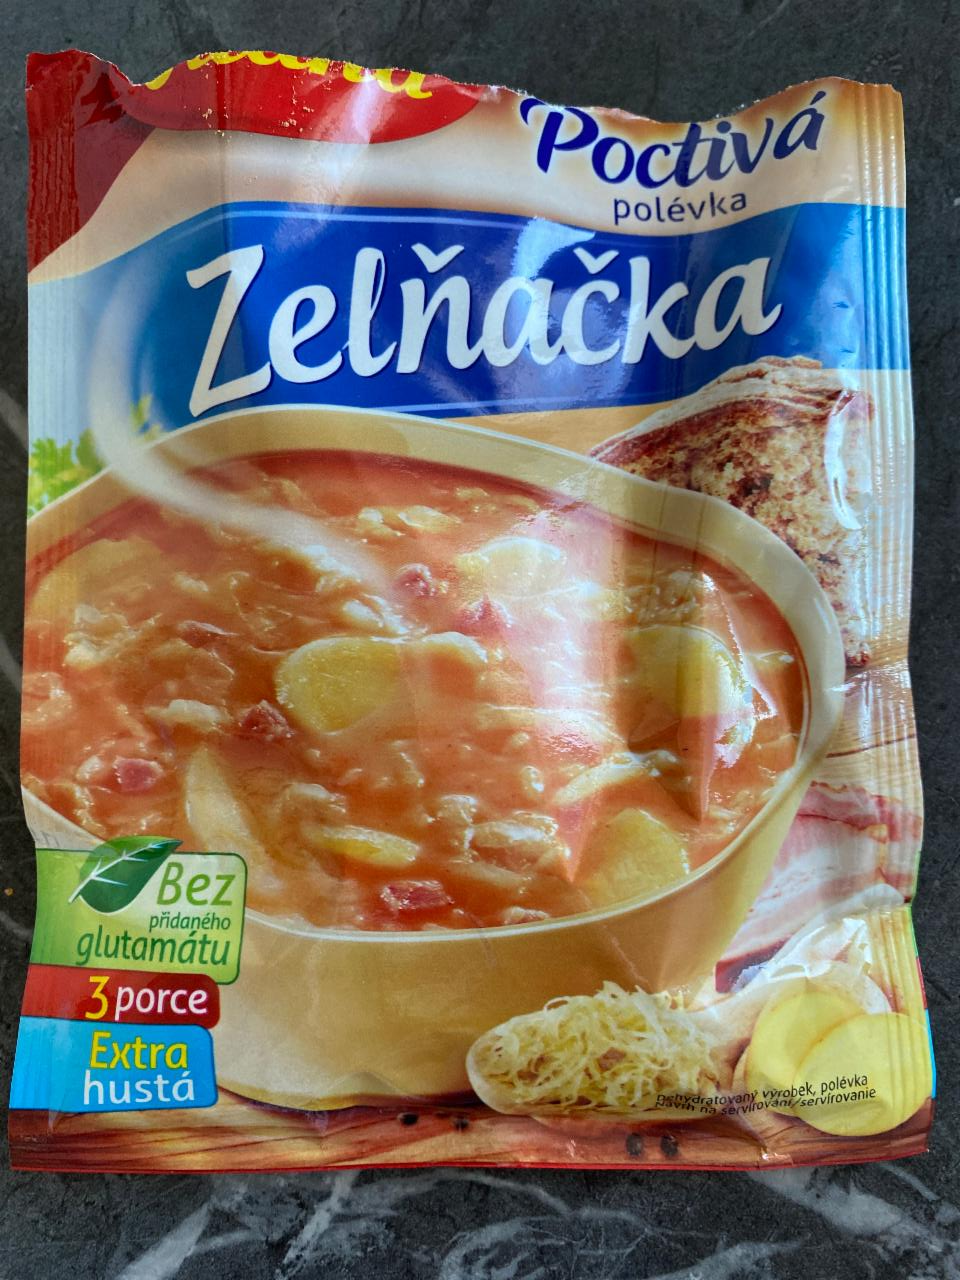 Fotografie - zelňačka poctivá polévka Vitana